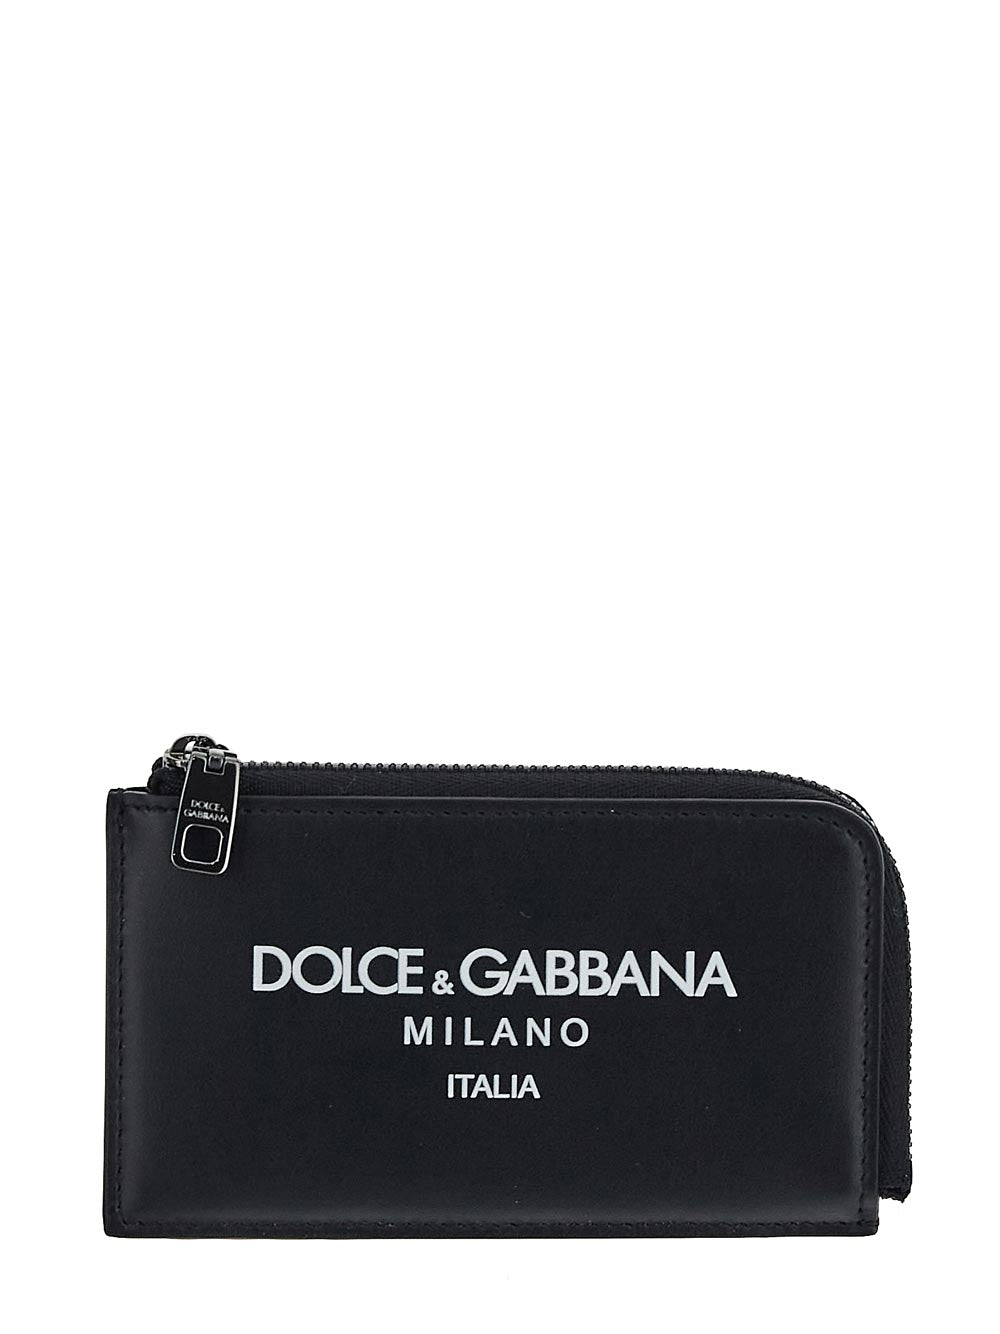 Dolce & Gabbana Calfskin Card Holder With Logo